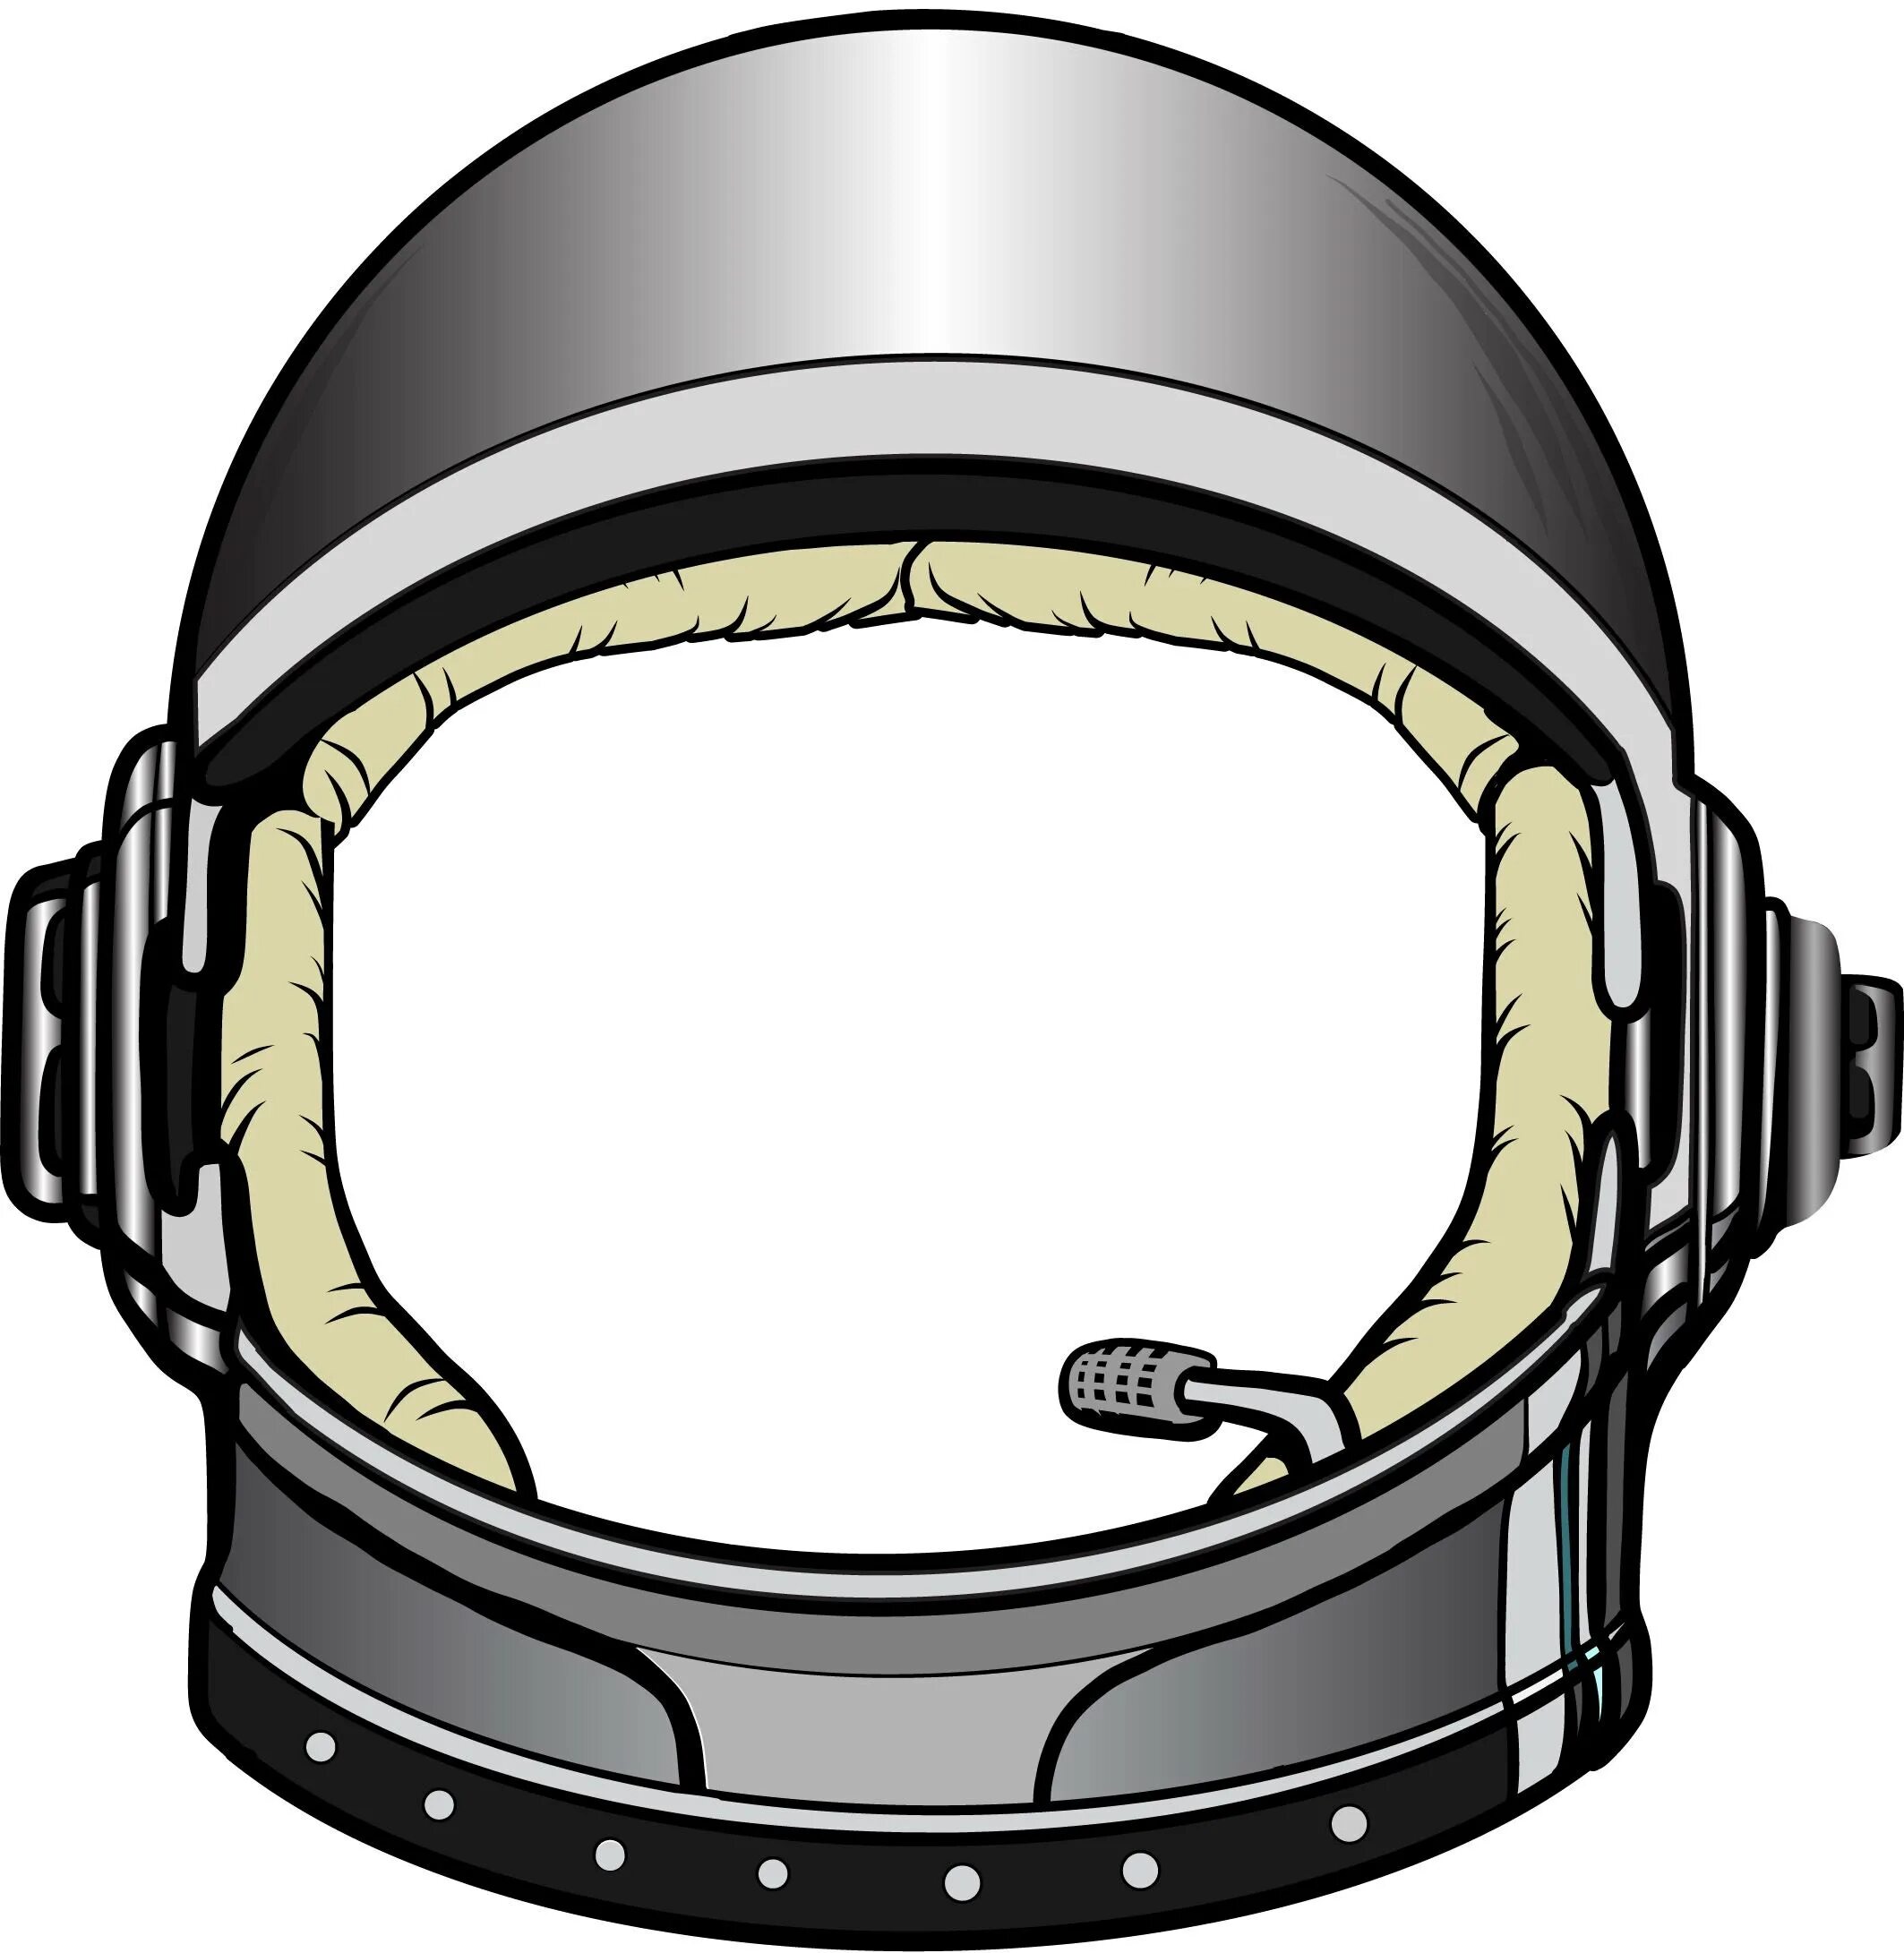 Шаблон шлема космонавта для распечатки. Шлем Astronaut Helmet. Шлем скафандра Космонавта. Шлем Космонавта SD IFI. Отражение в шлеме Космонавта сбоку.